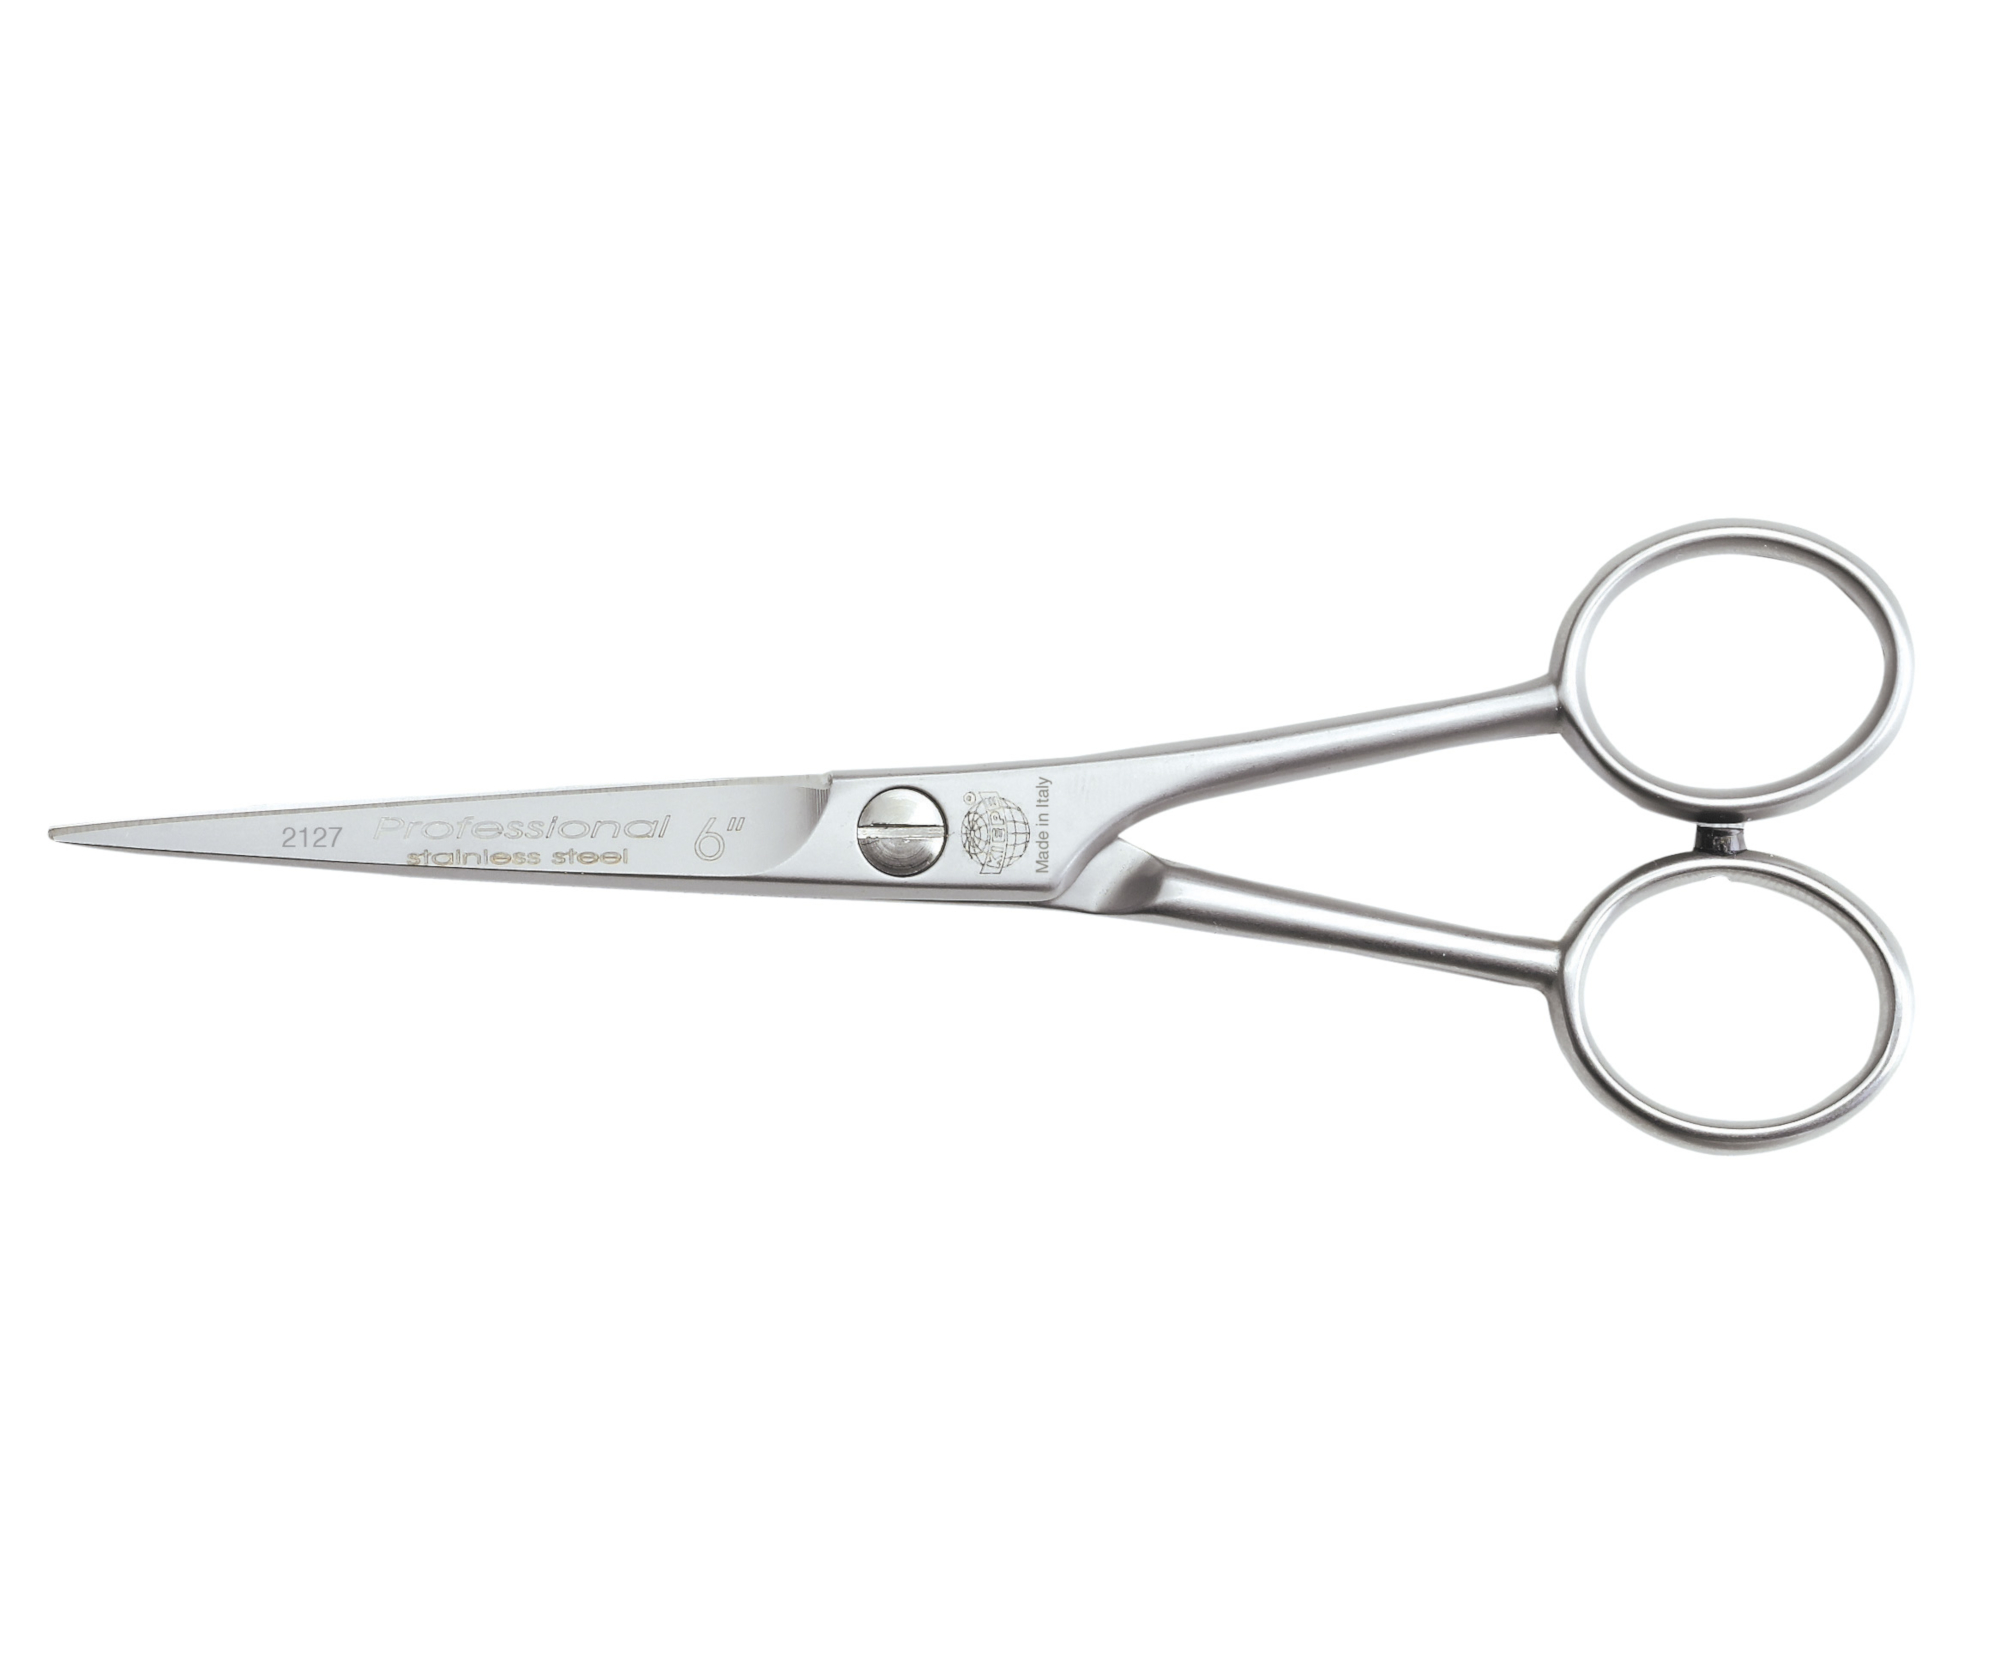 Kadeřnické nůžky s mikroozubením Kiepe Standard Hair Scissors Pro Cut 2127 - 6" stříbrné (2127/6) + DÁREK ZDARMA